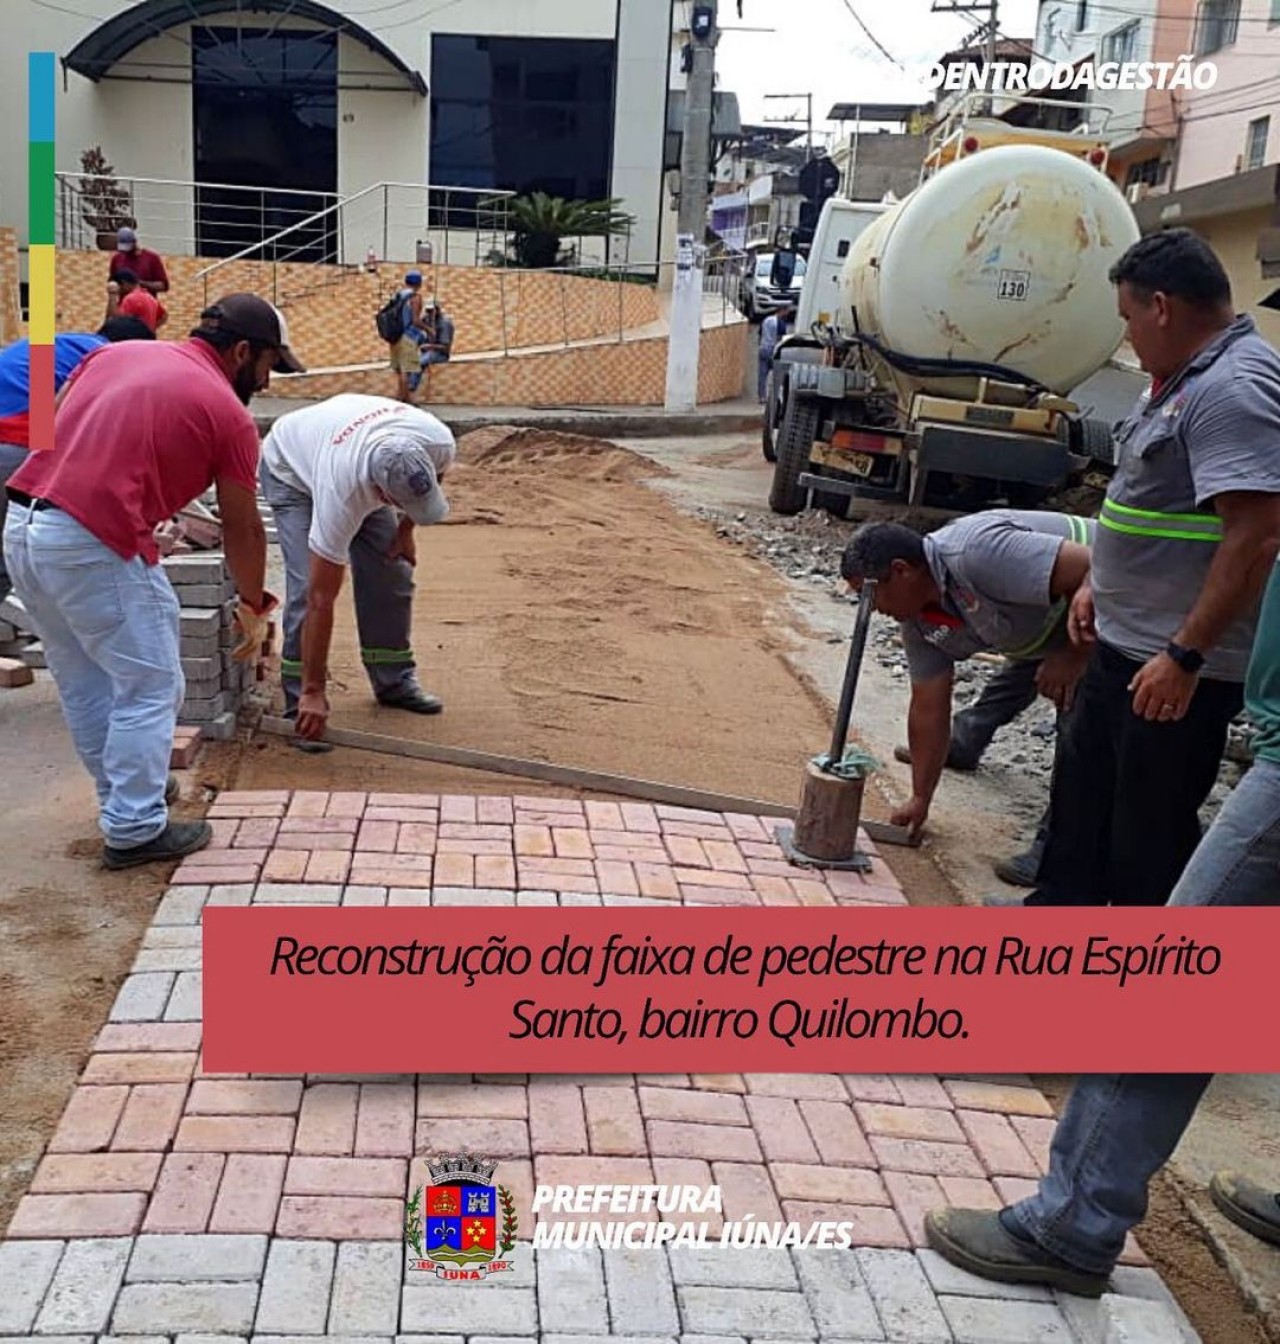 OBRA 18 - Reconstrução faixa de pedestre - Rua Espírito Santo (Quilombo)